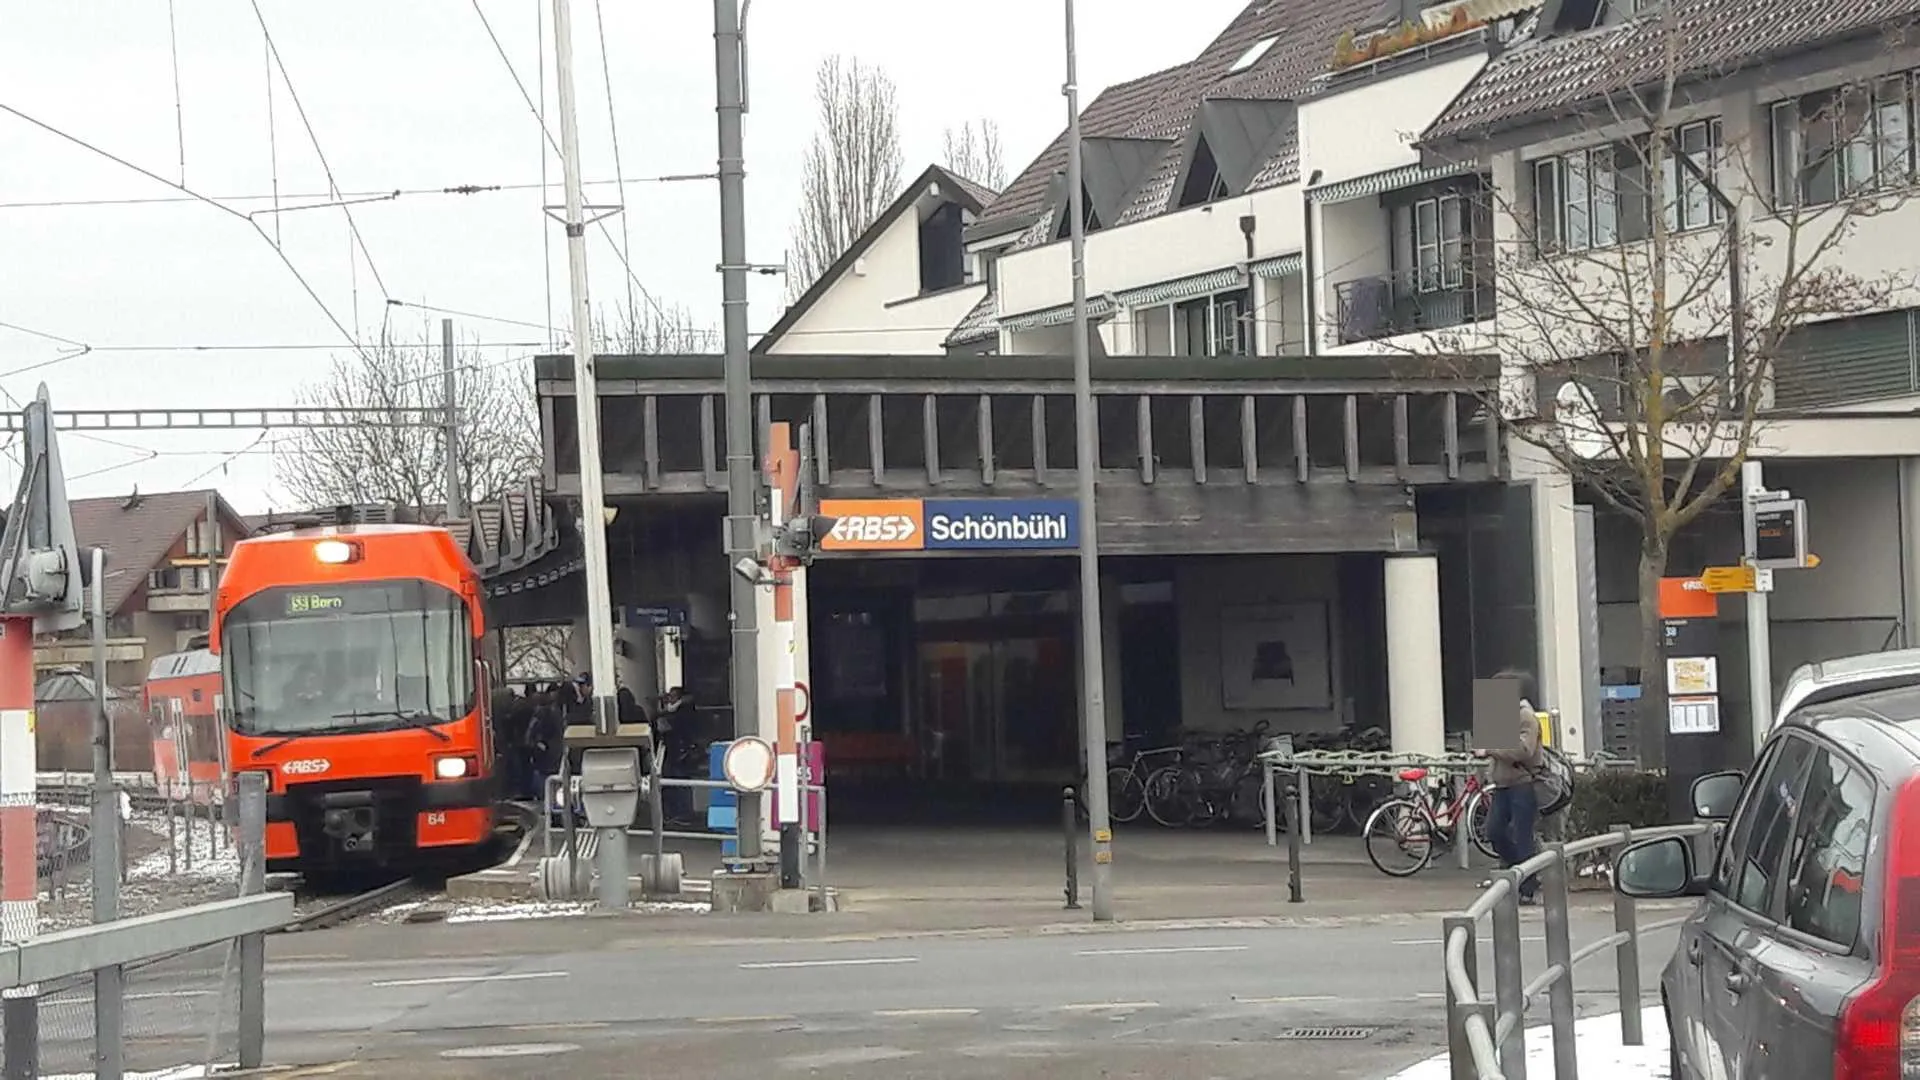 Photo showing: Schönbühl RBS railway station in Urtenen-Schönbühl, Switzerland.